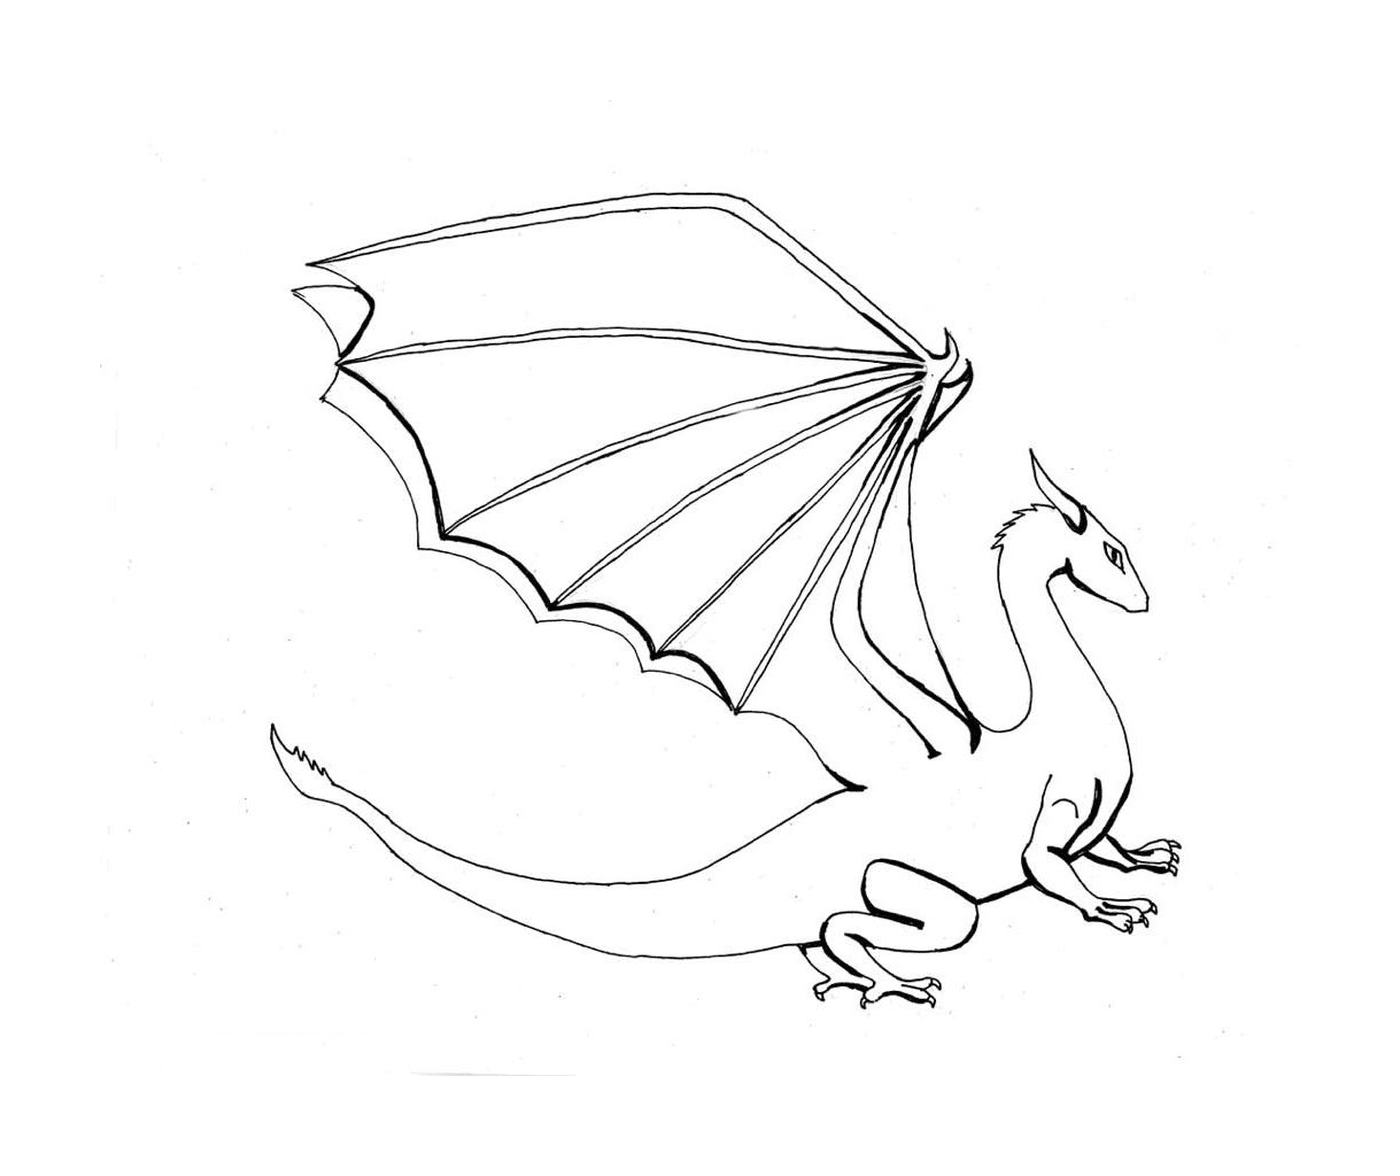  Un dragón blanco con una cola larga 